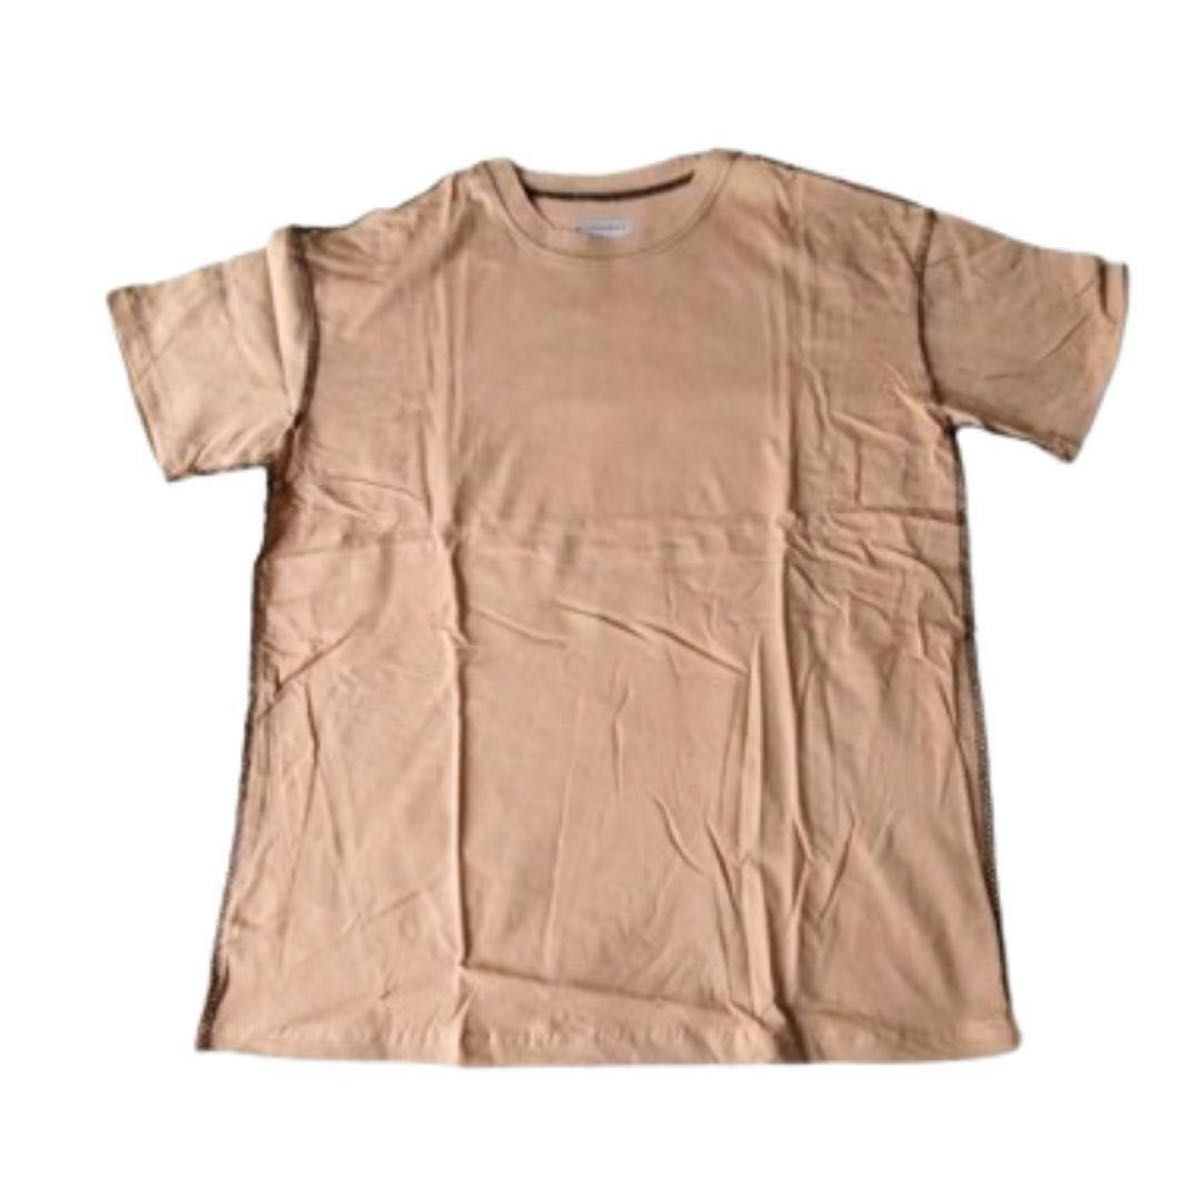 半袖Tシャツ 短パン 無地 春夏 上下セット 部屋着 オーバーサイズ ゆったり 可愛い レディース セットアップ  ベージュ L